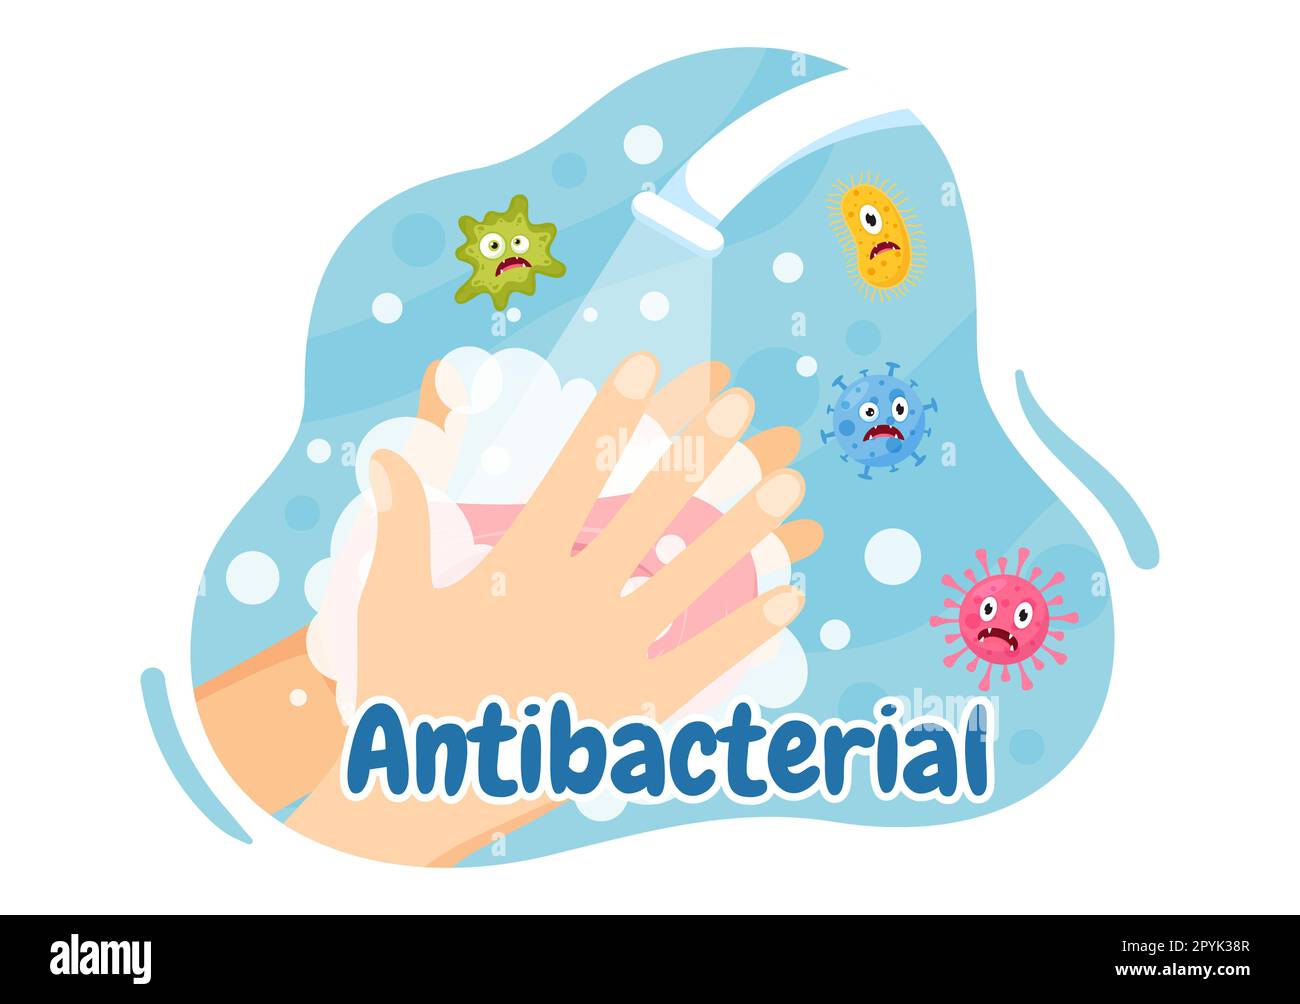 Illustration antibactérienne avec se laver les mains, virus infection et microbes bactérias contrôle dans l'hygiène soins de santé dessin à la main de dessins de dessin à la main Banque D'Images